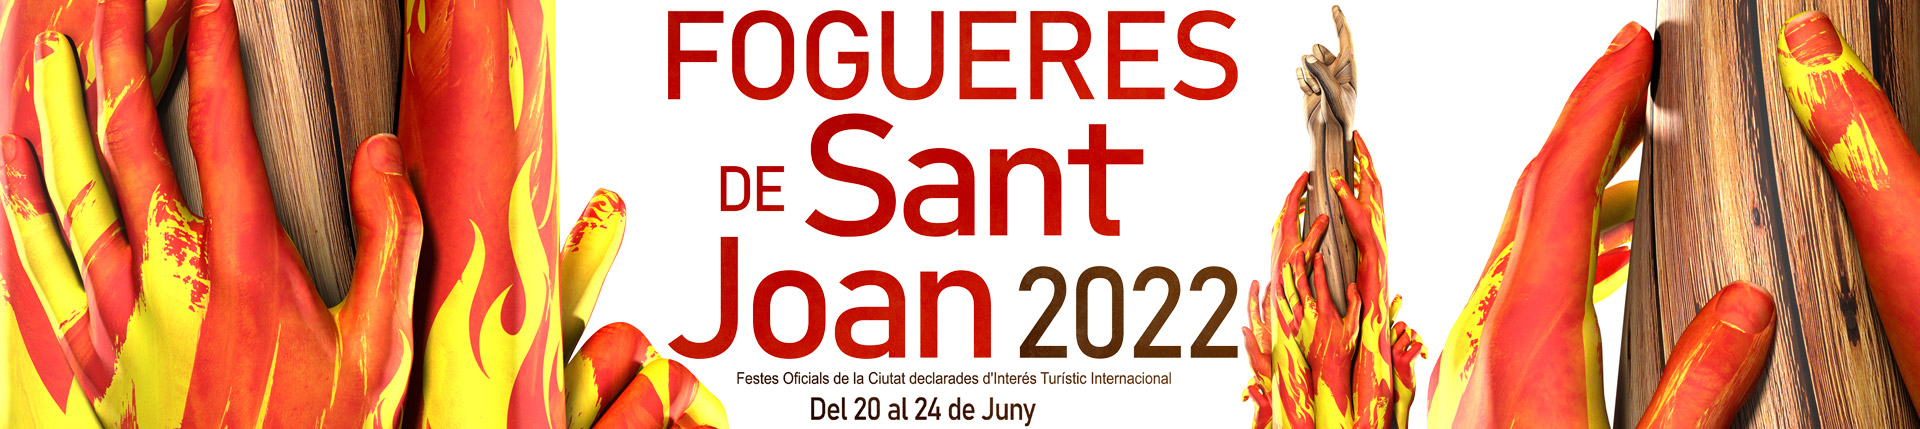 Fogueres de Sant Joan 2022